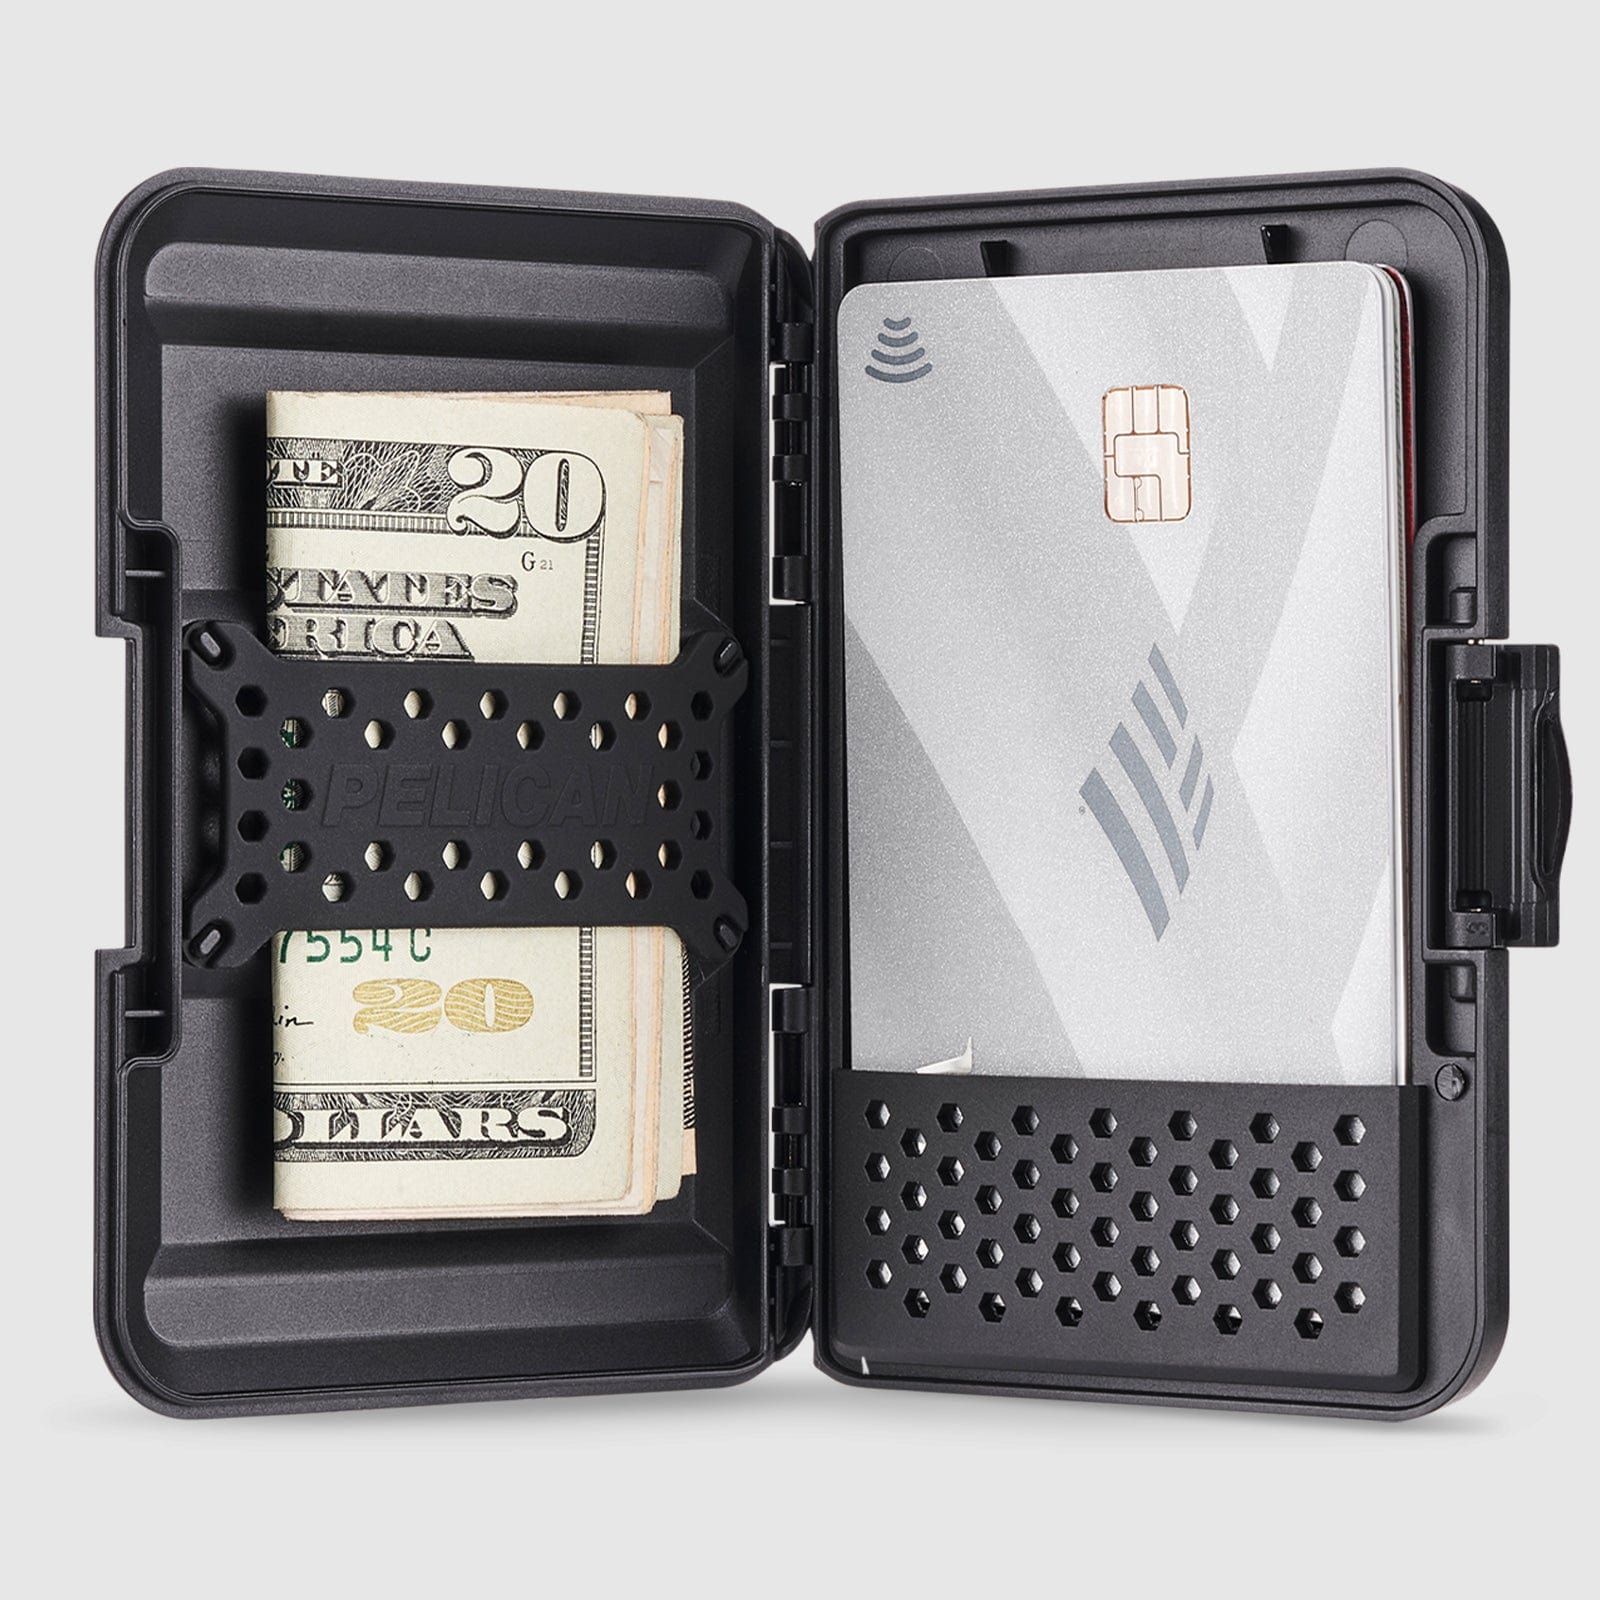 Pelican Protector MagSafe Wallet (Black)